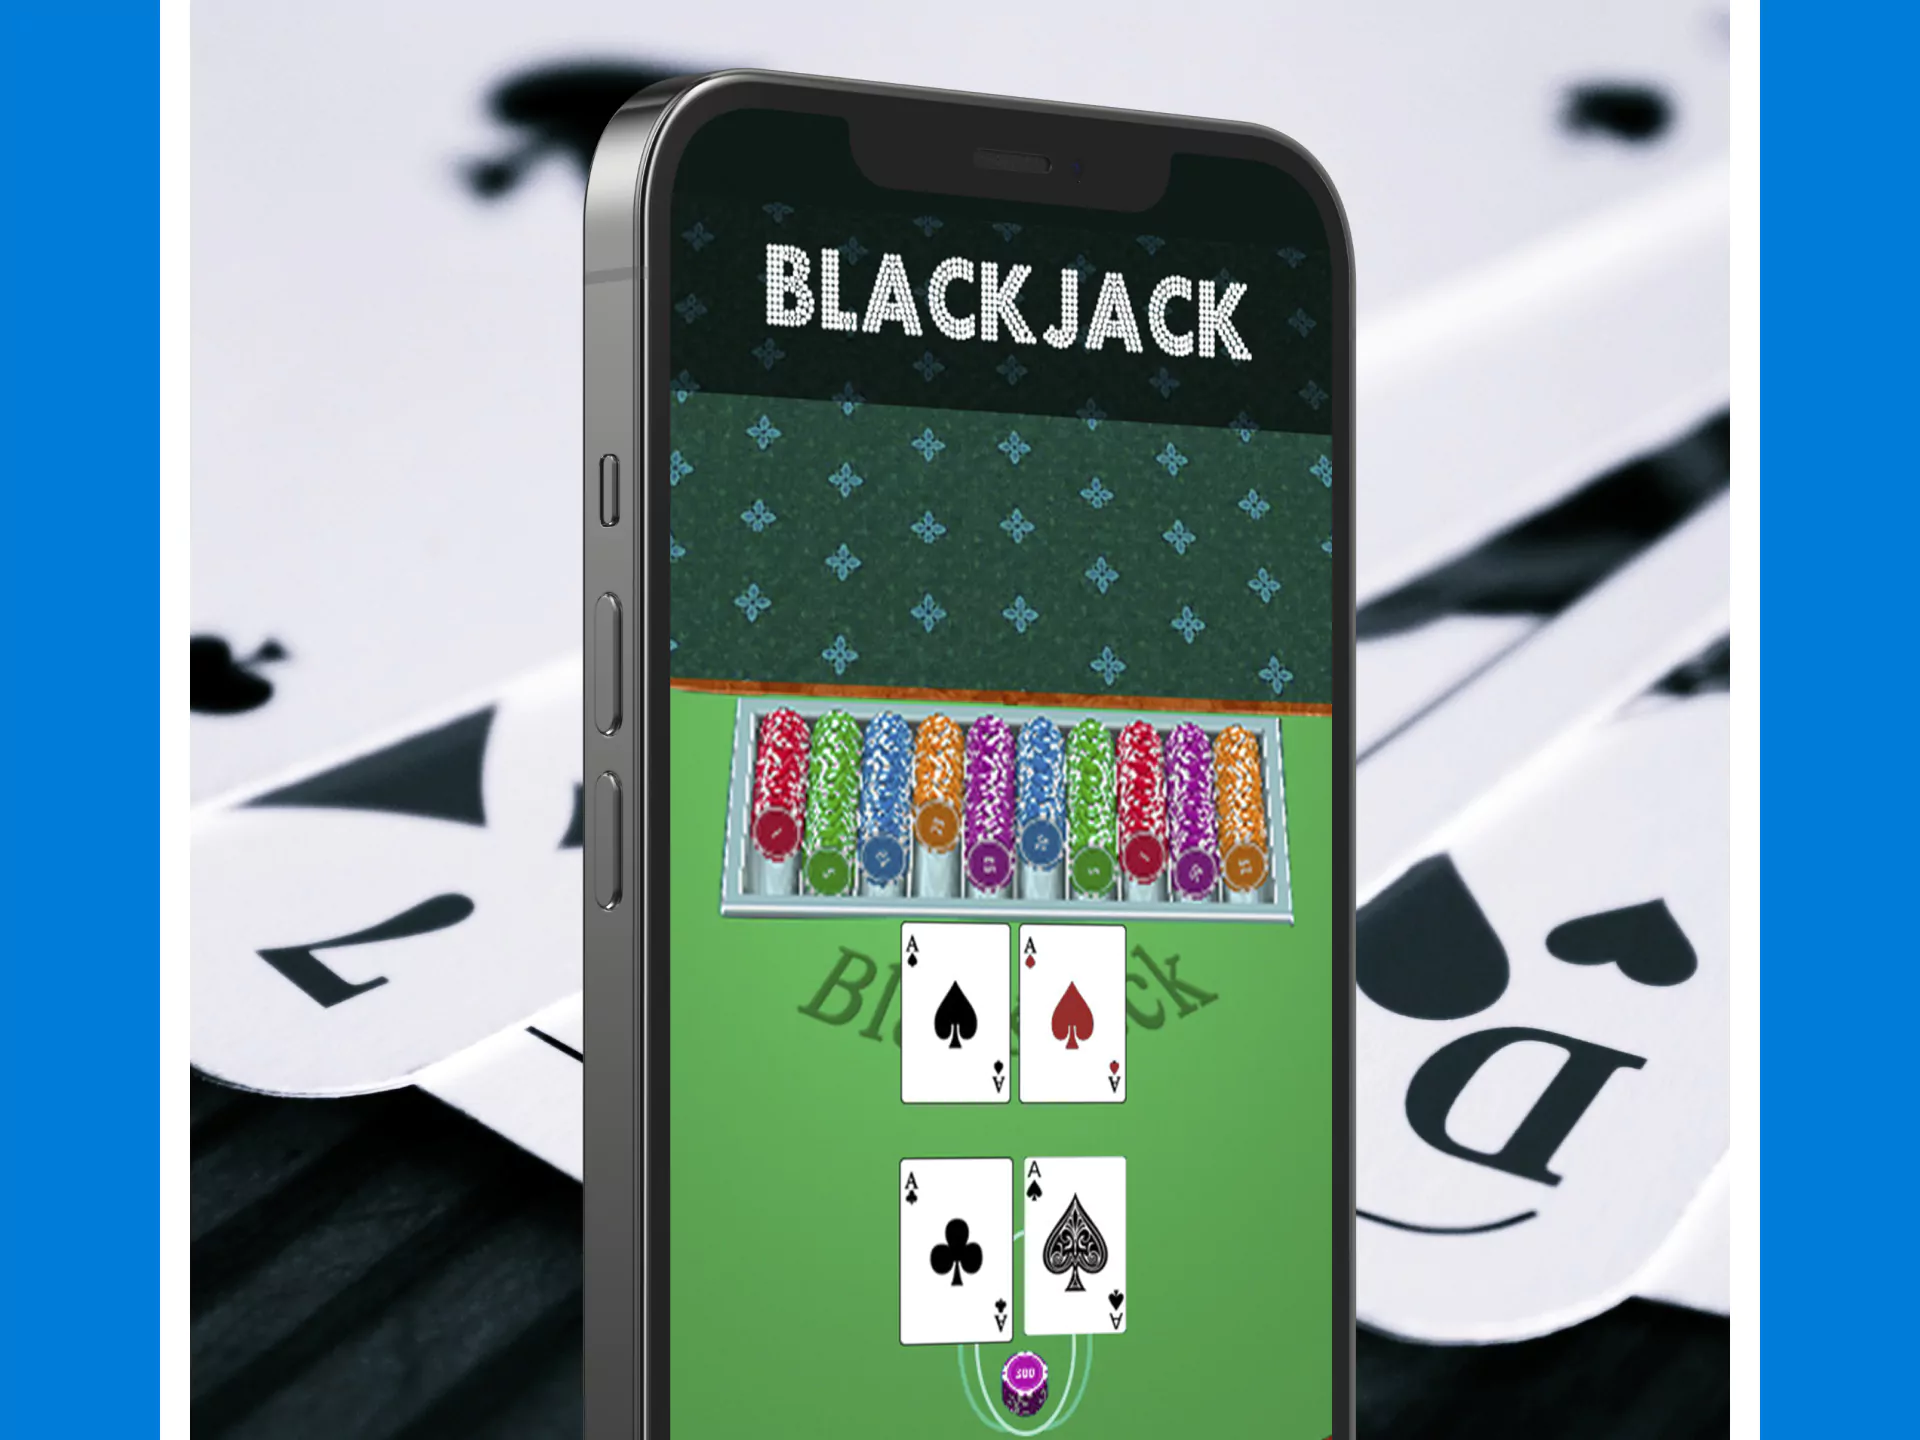 You can play blackjack through the Crickex app.